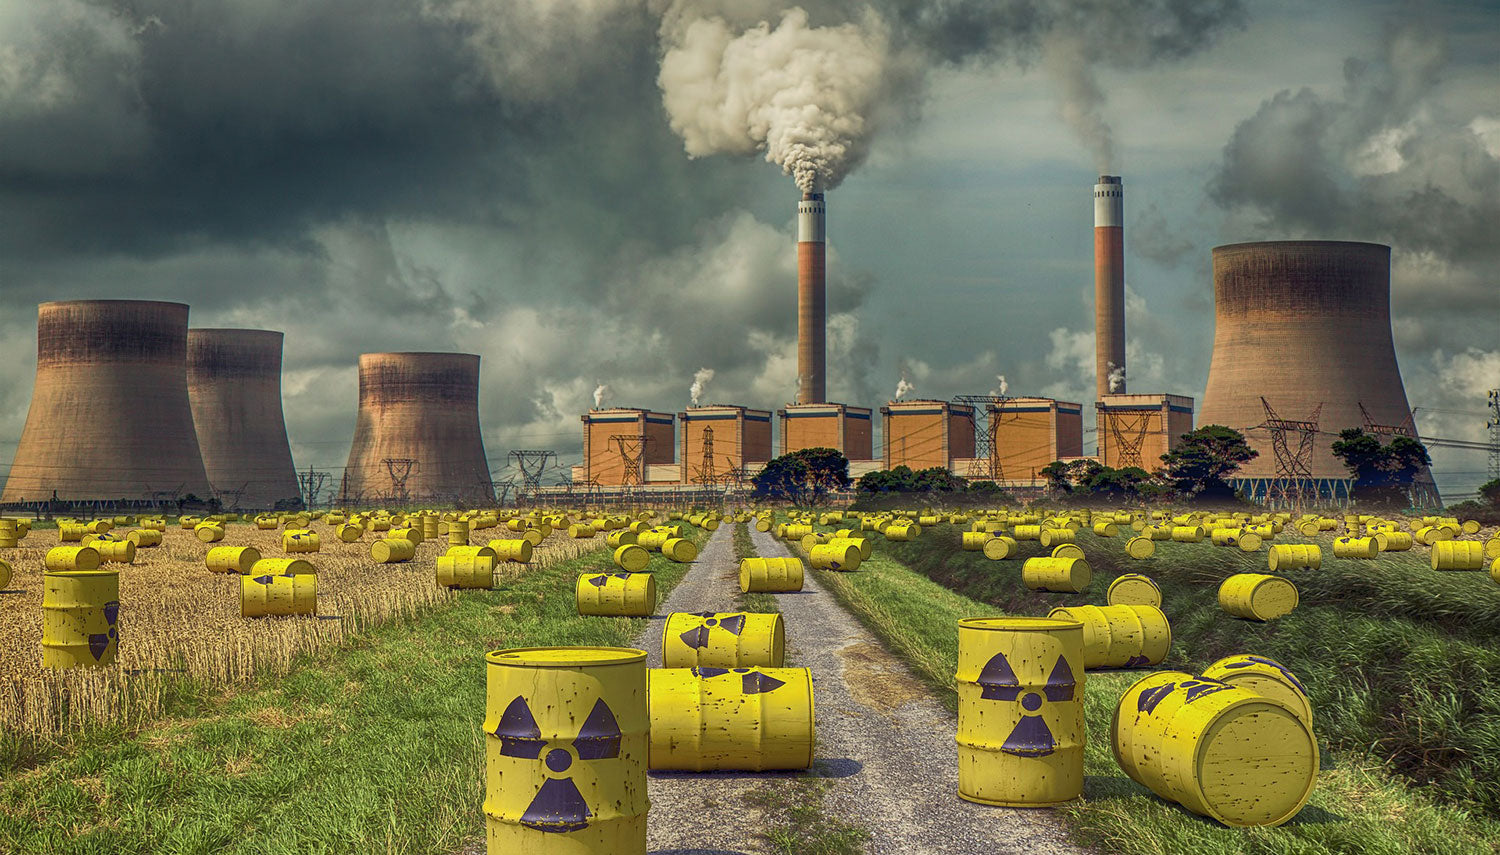 Kernkraftwerk ist einer der größten Verursacher von Kohlenstoffemissionen